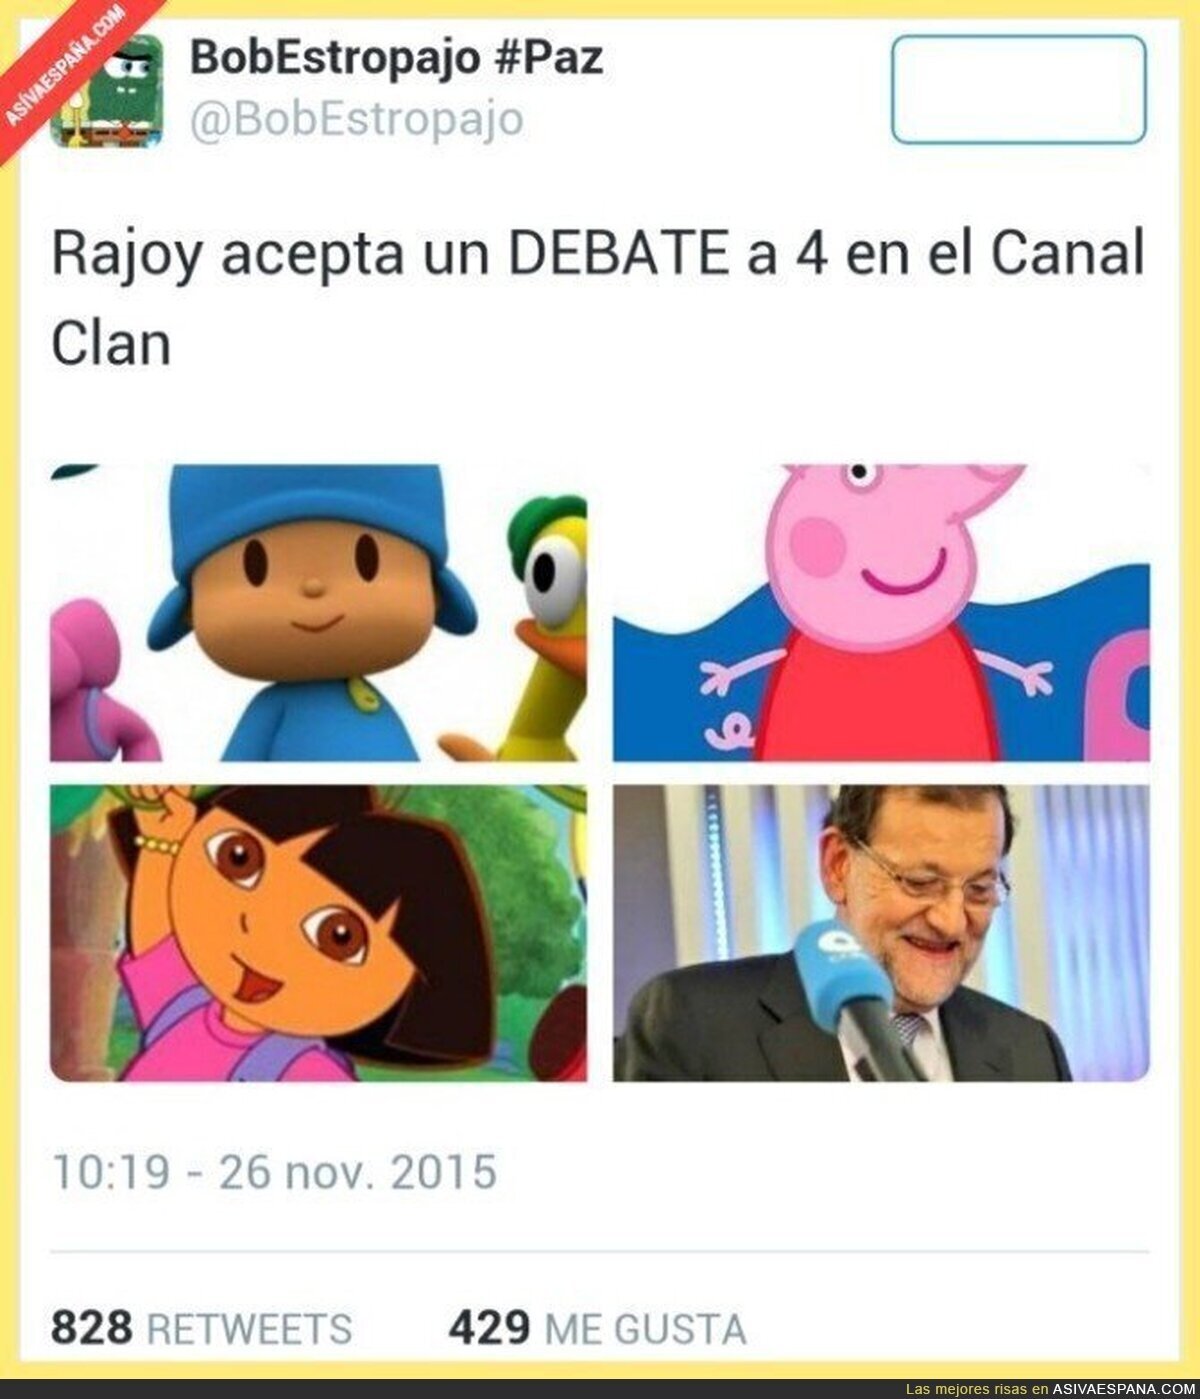 Por fin Rajoy irá a un debate